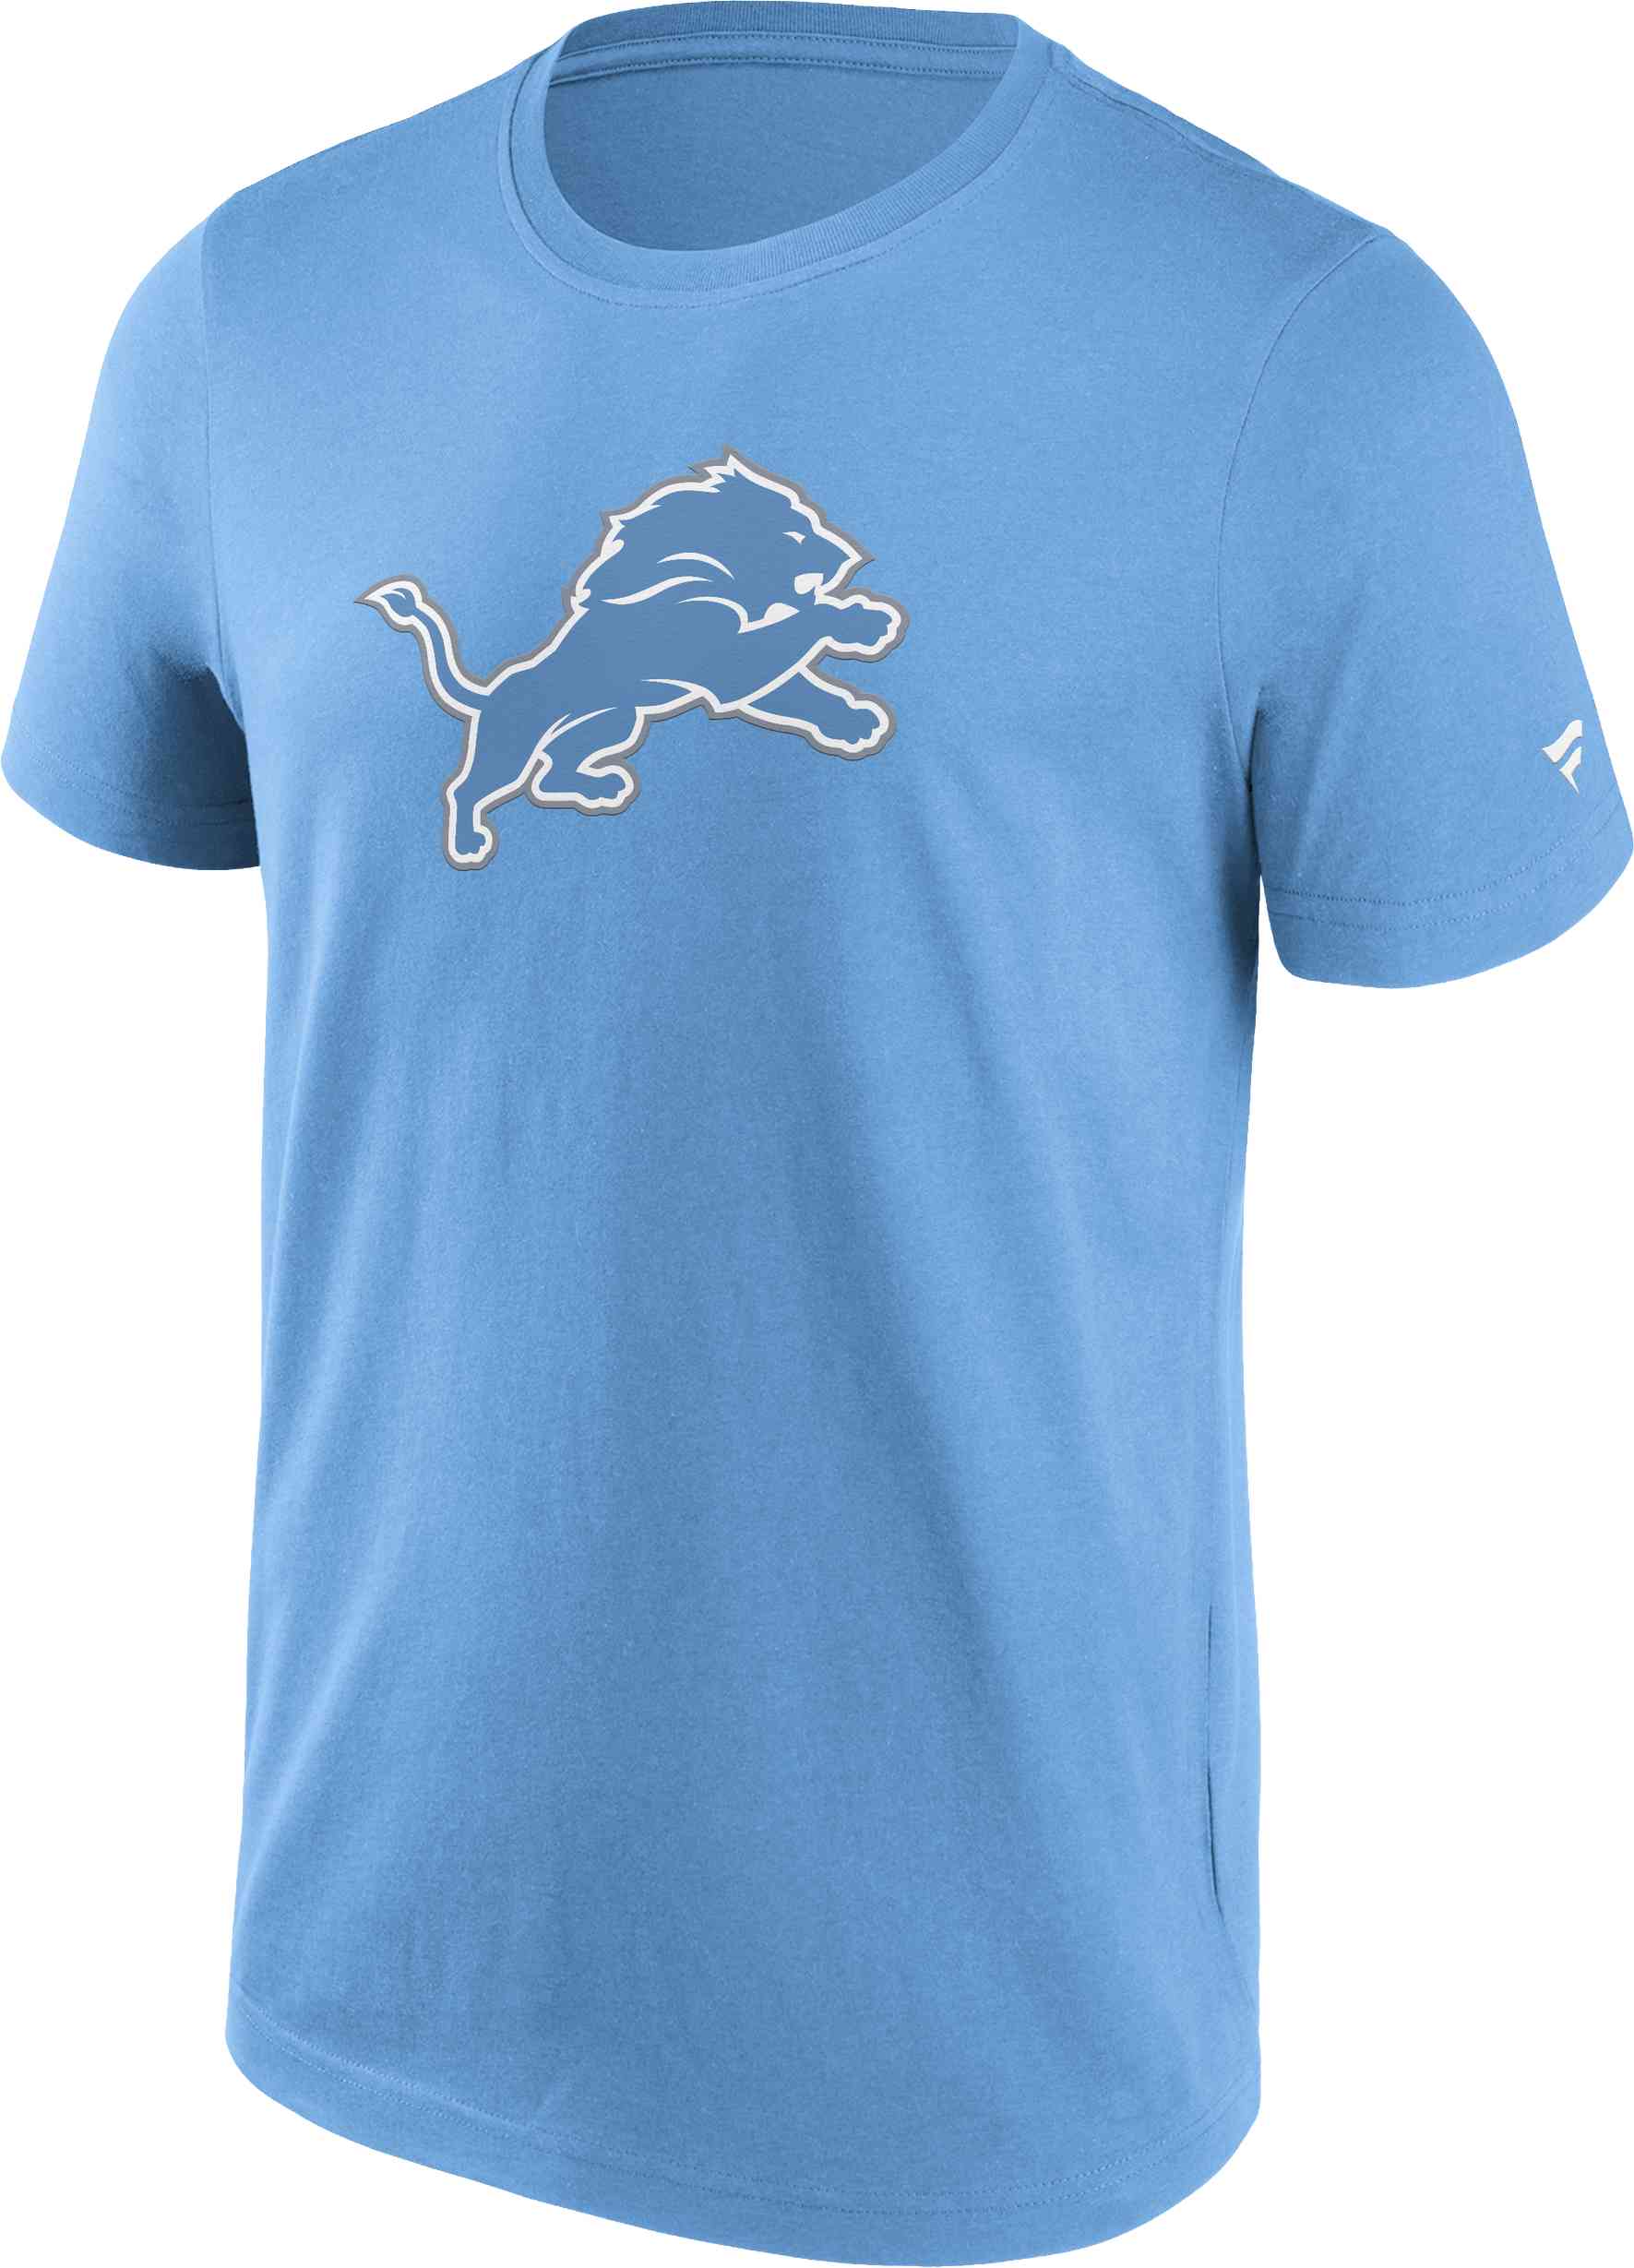 Fanatics - NFL Detroit Lions Primary Logo Graphic T-Shirt